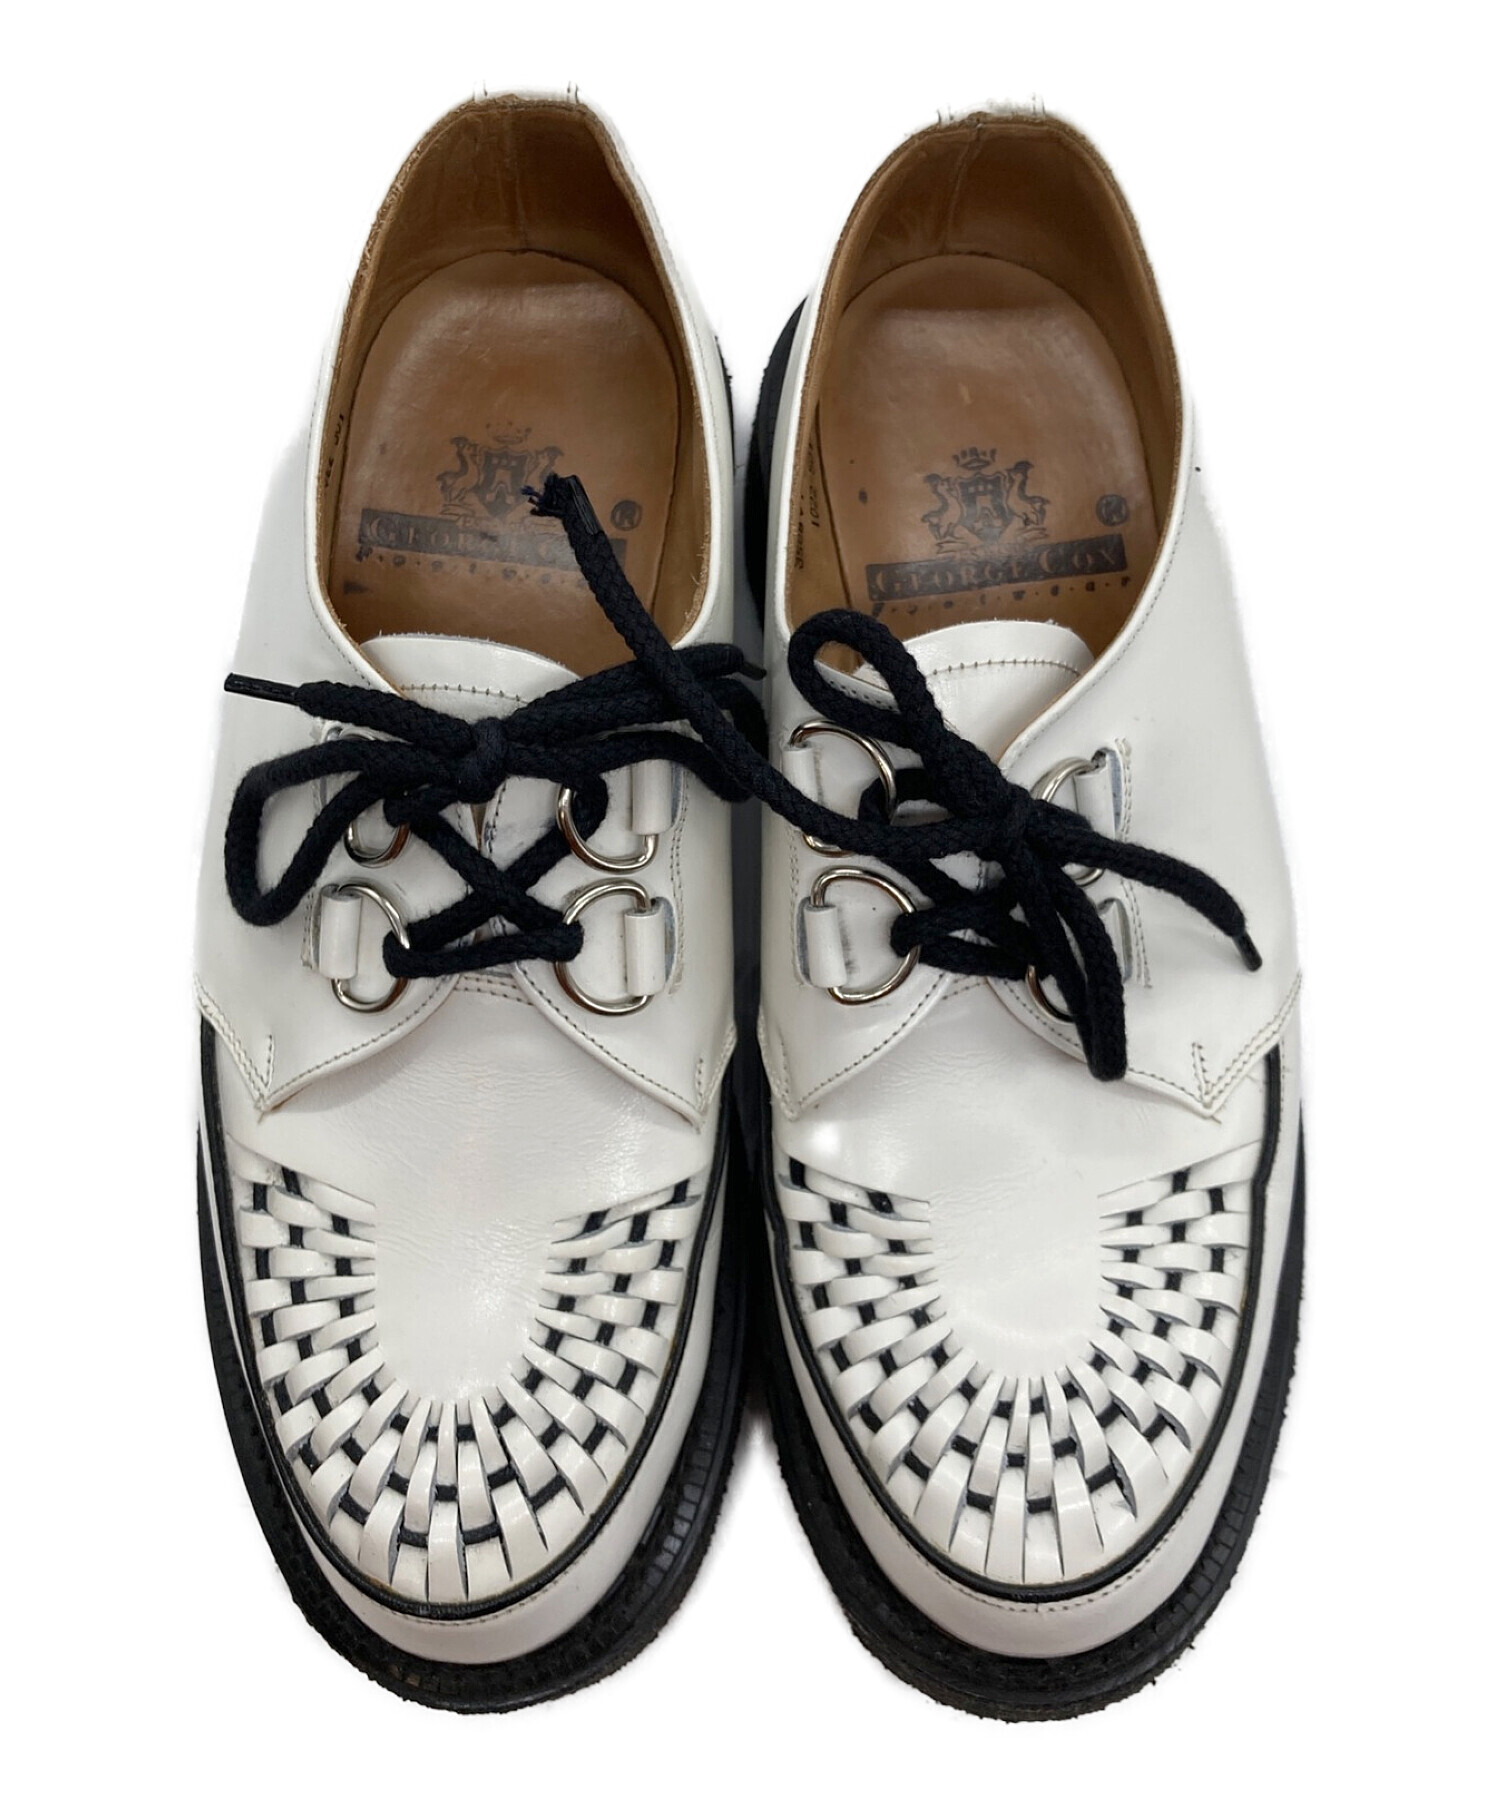 ジョージコックス ギブソン UK7 白 ホワイト ラバーソール - 靴